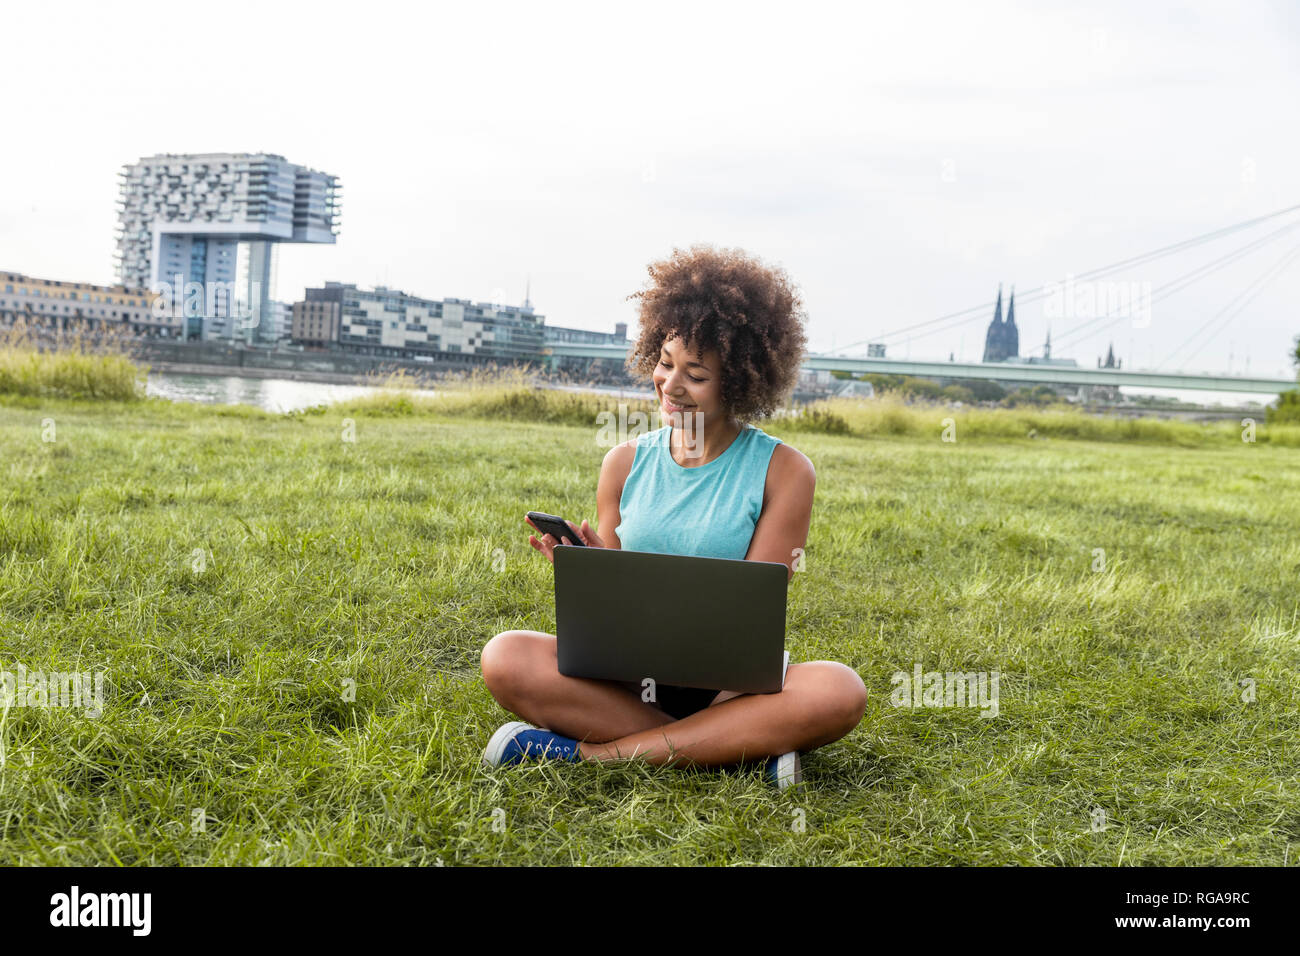 Germania, Colonia, donna seduta sul prato con computer portatile e un telefono cellulare Foto Stock